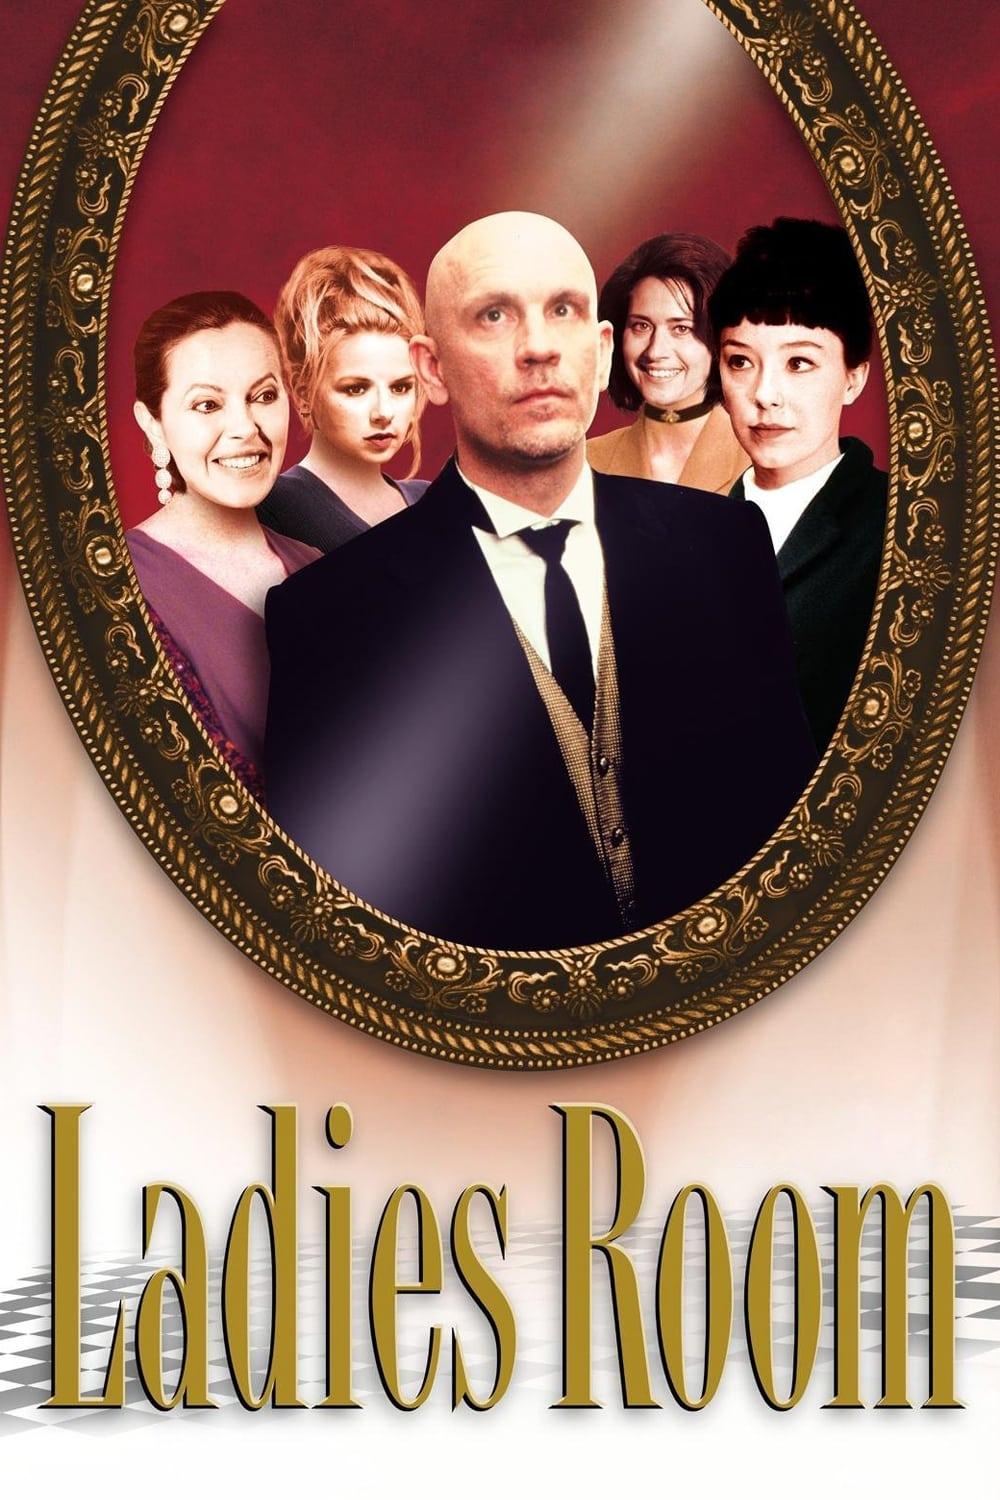 Ladies Room poster